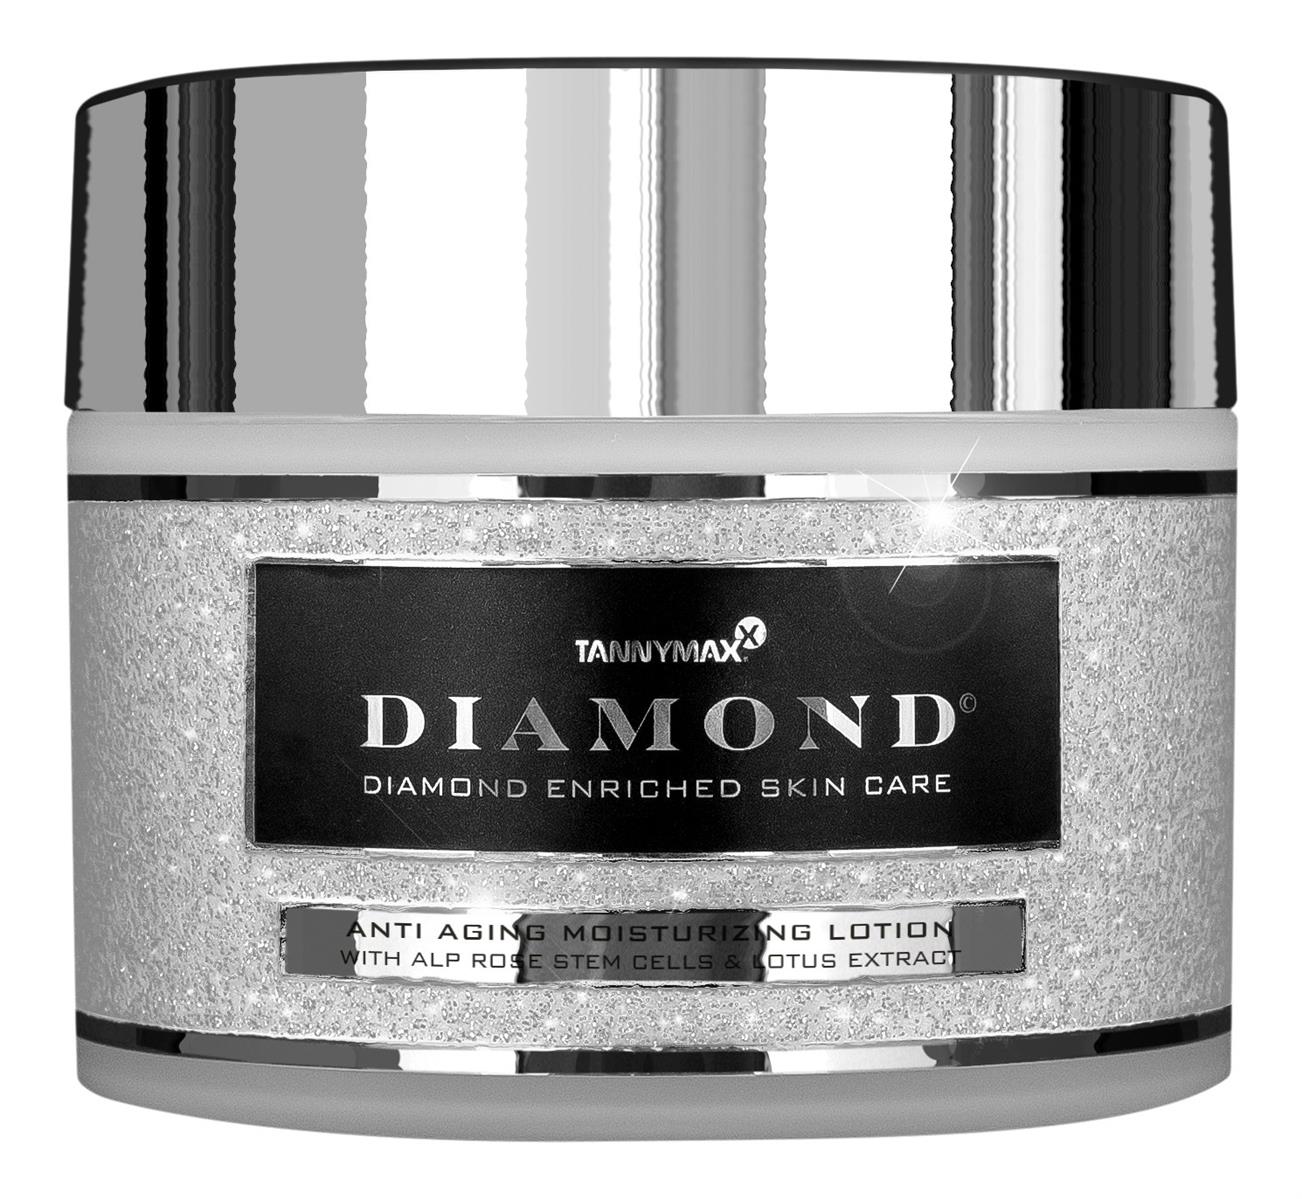 Tannymaxx Diamond -Anti Aging Moisturizing Lotion 3403030000 Feuchtigkeitscreme 190ml